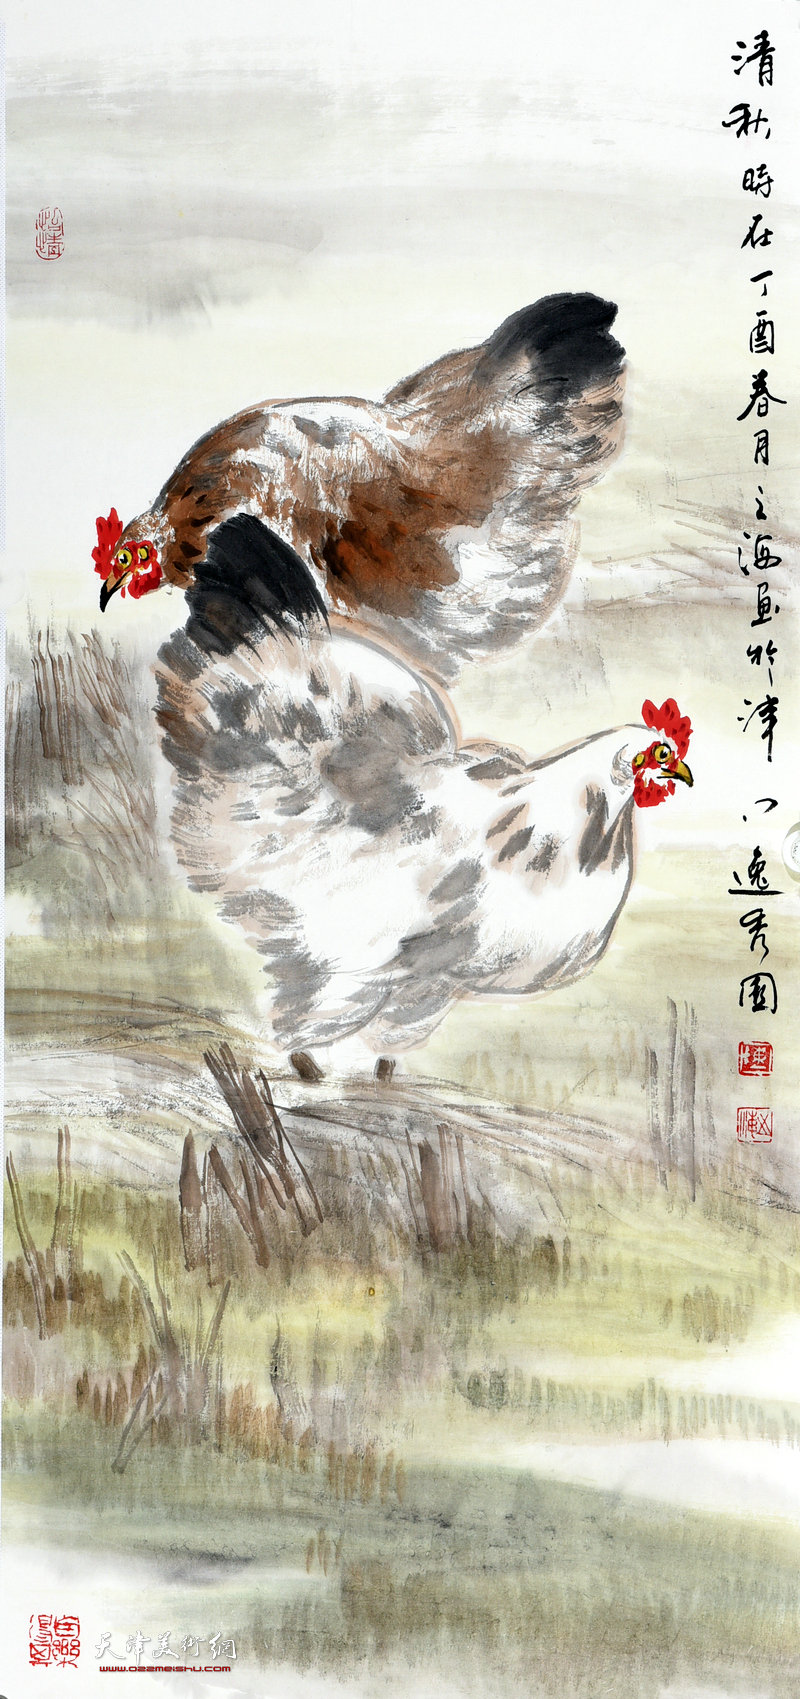 天津著名画家陈之海写意画鸡作品欣赏 |中国画|天津网